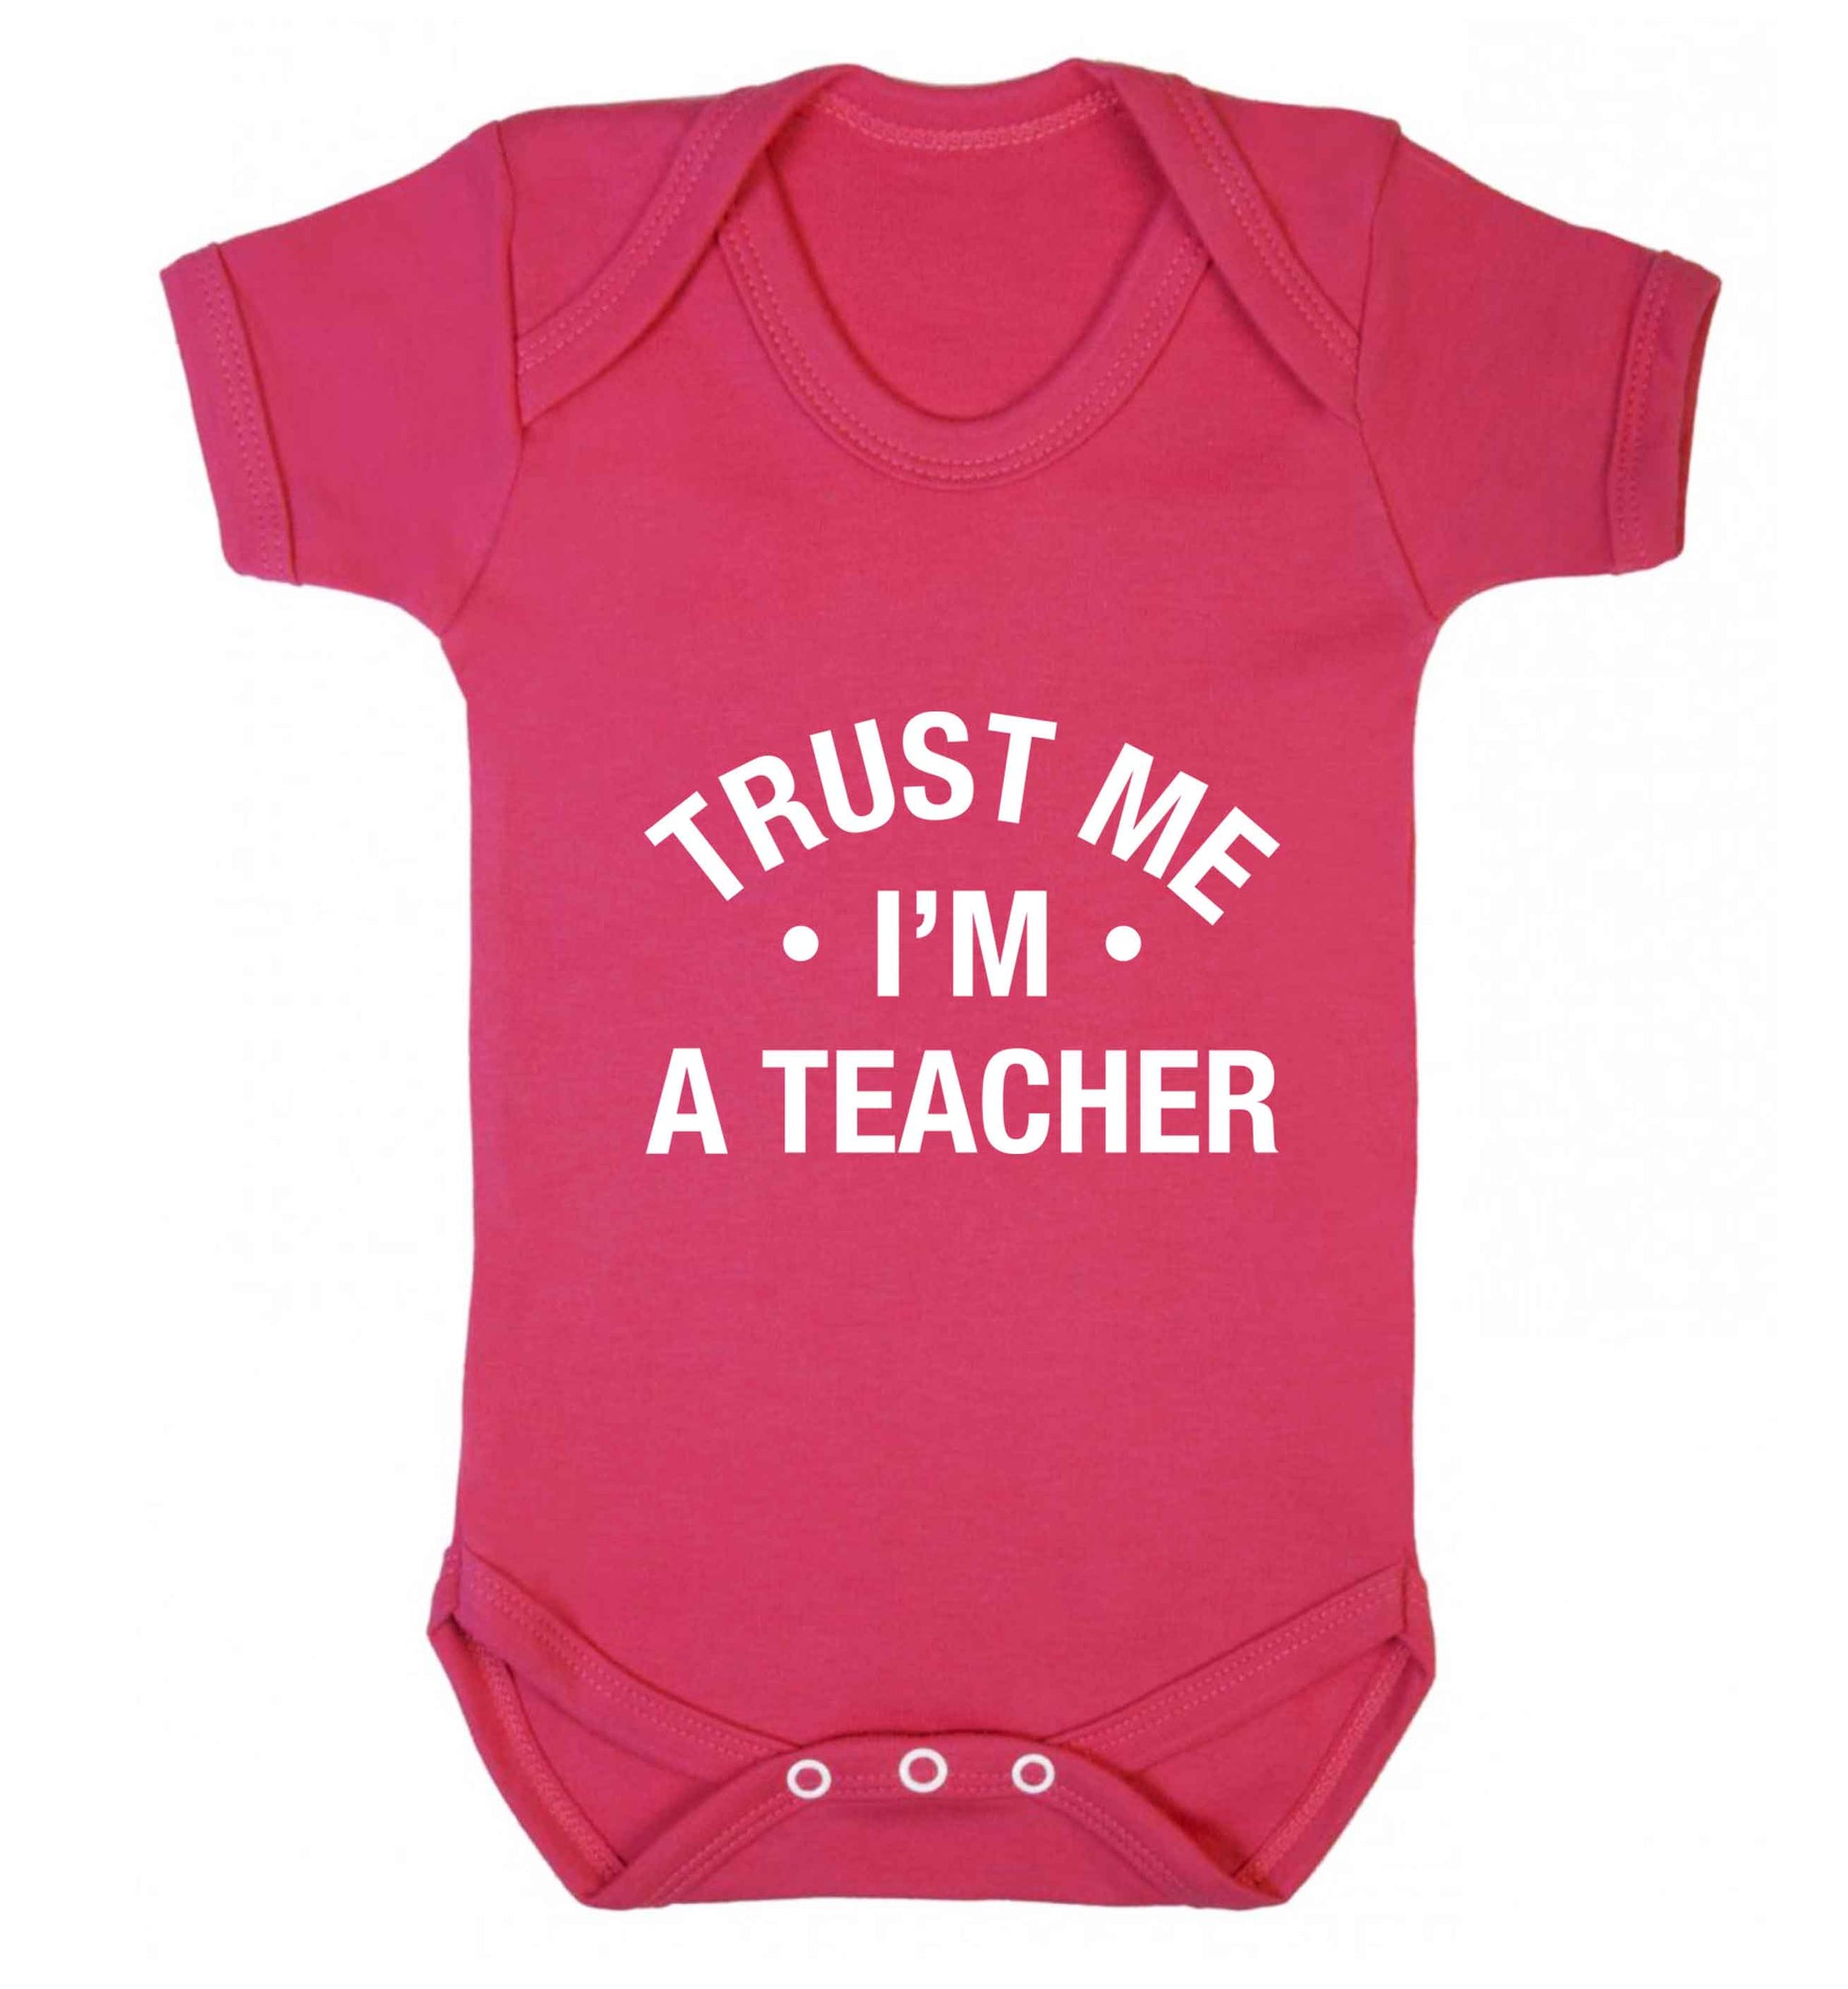 Trust me I'm a teacher baby vest dark pink 18-24 months